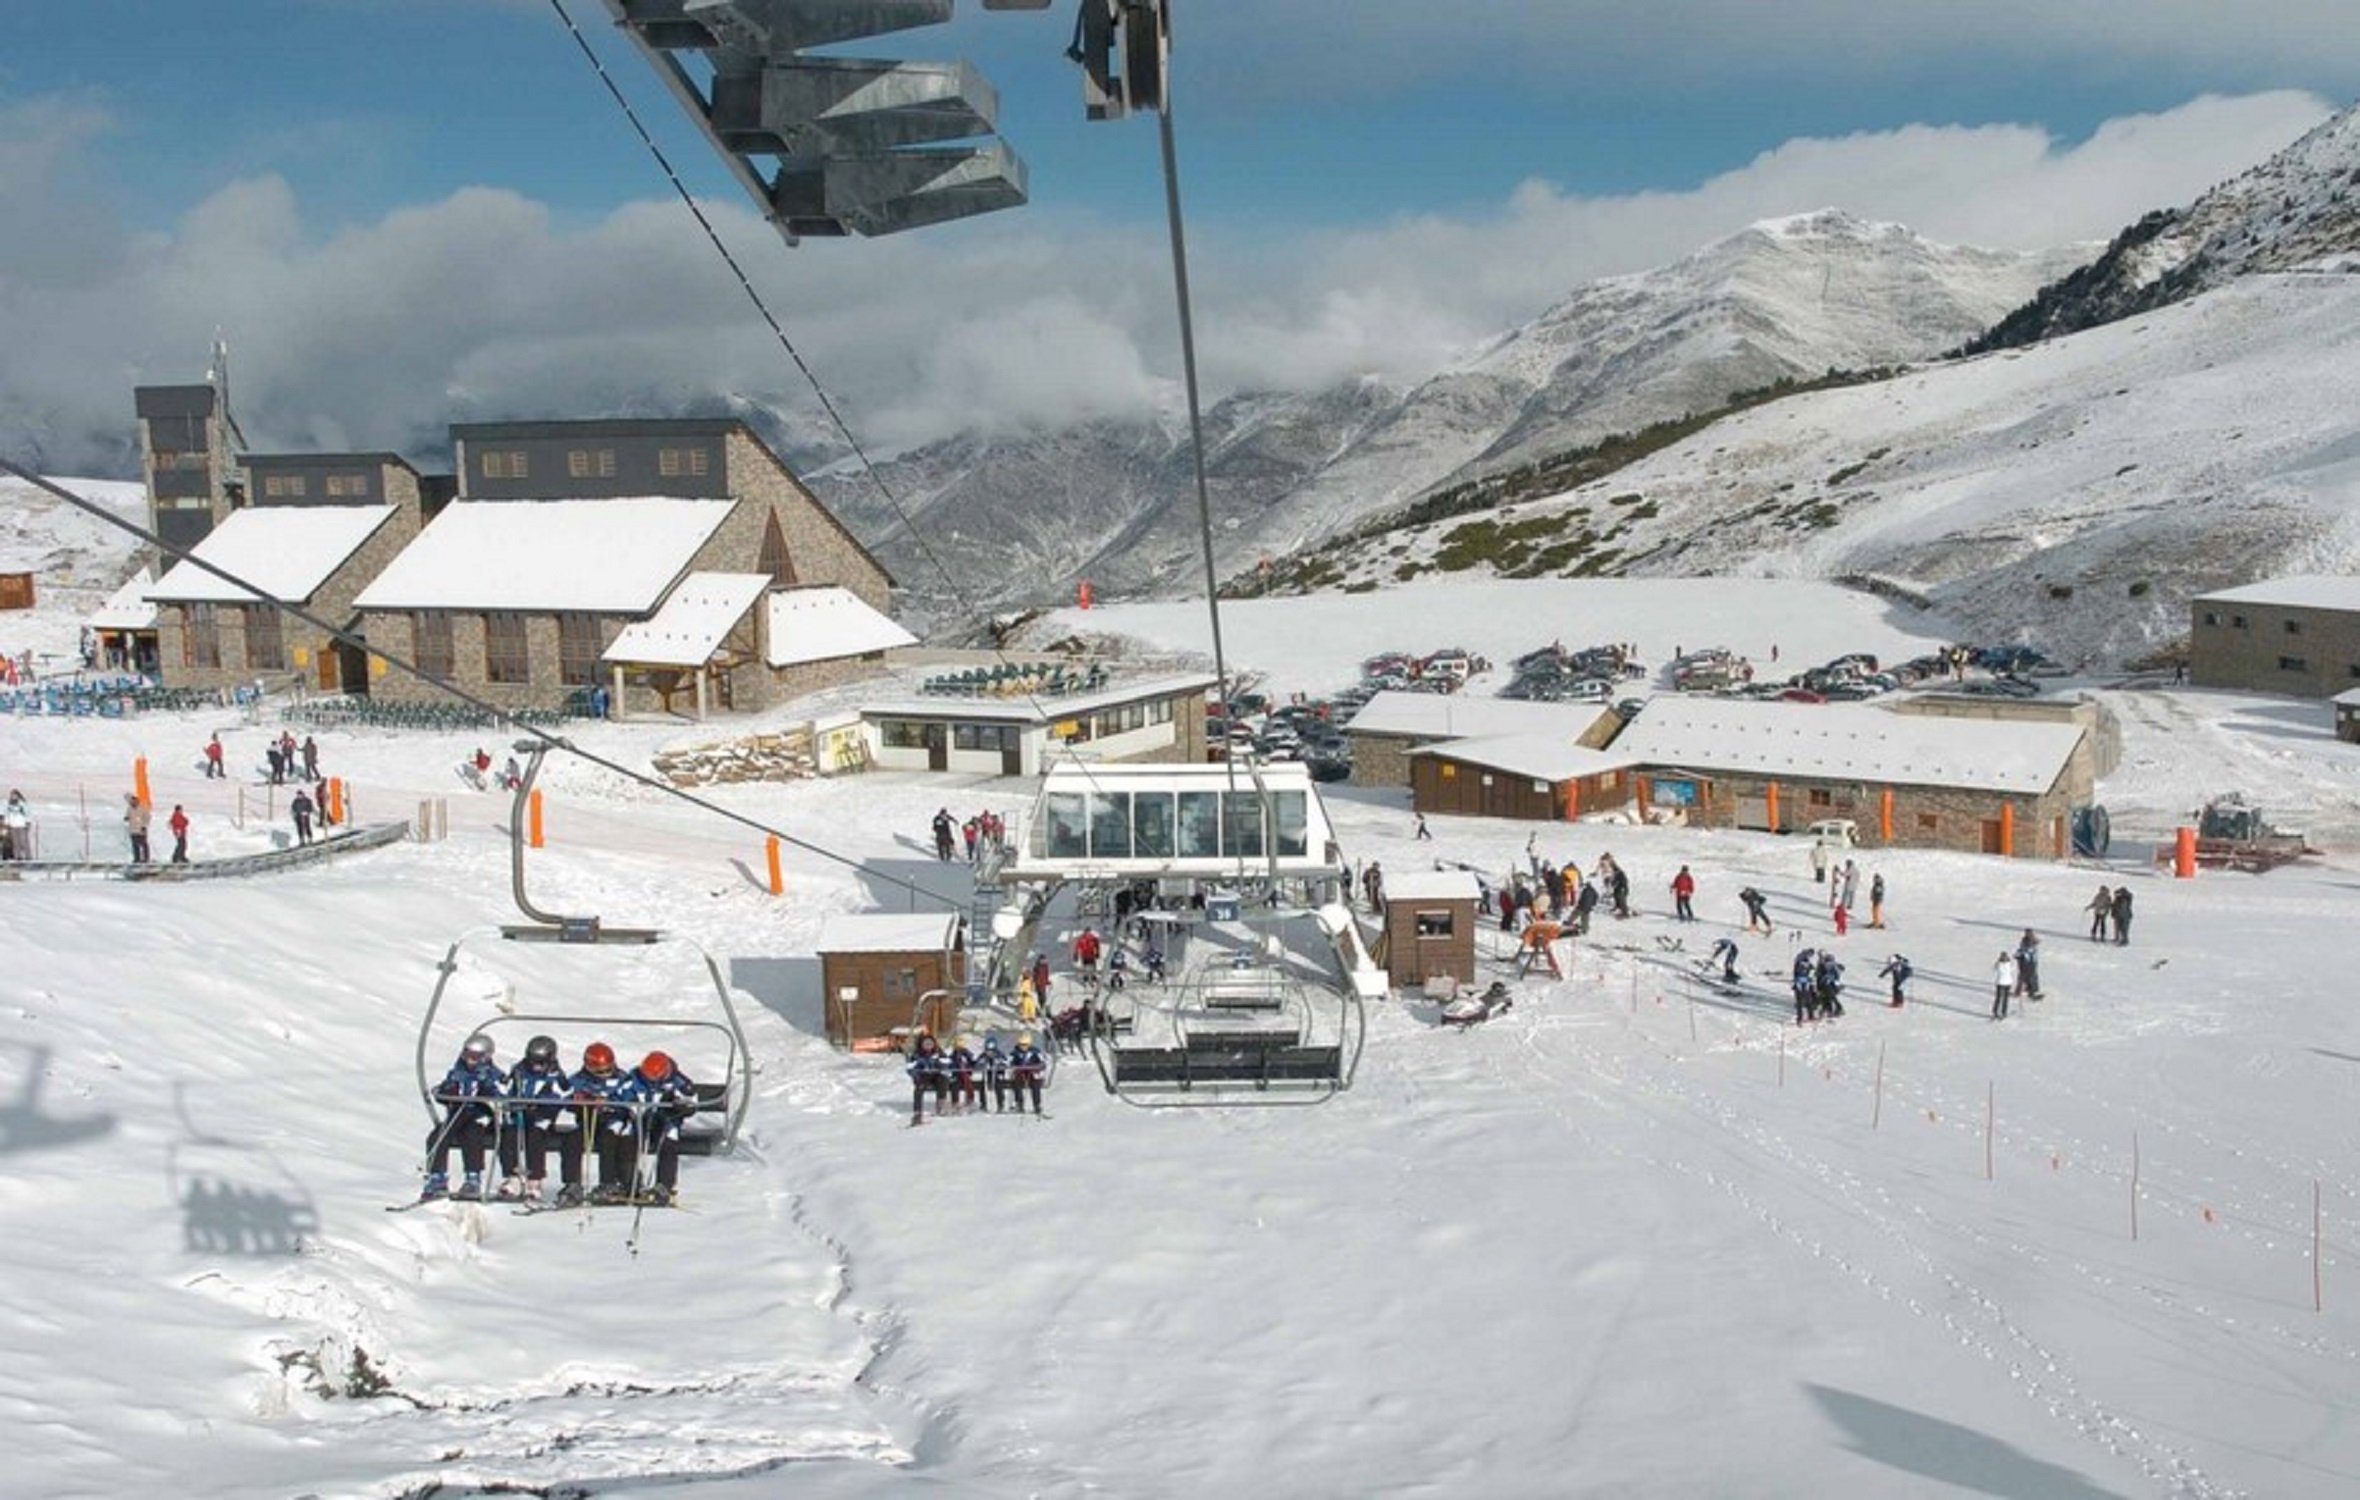 Boí Taüll rep el premi a millor estació d'esquí d'Espanya